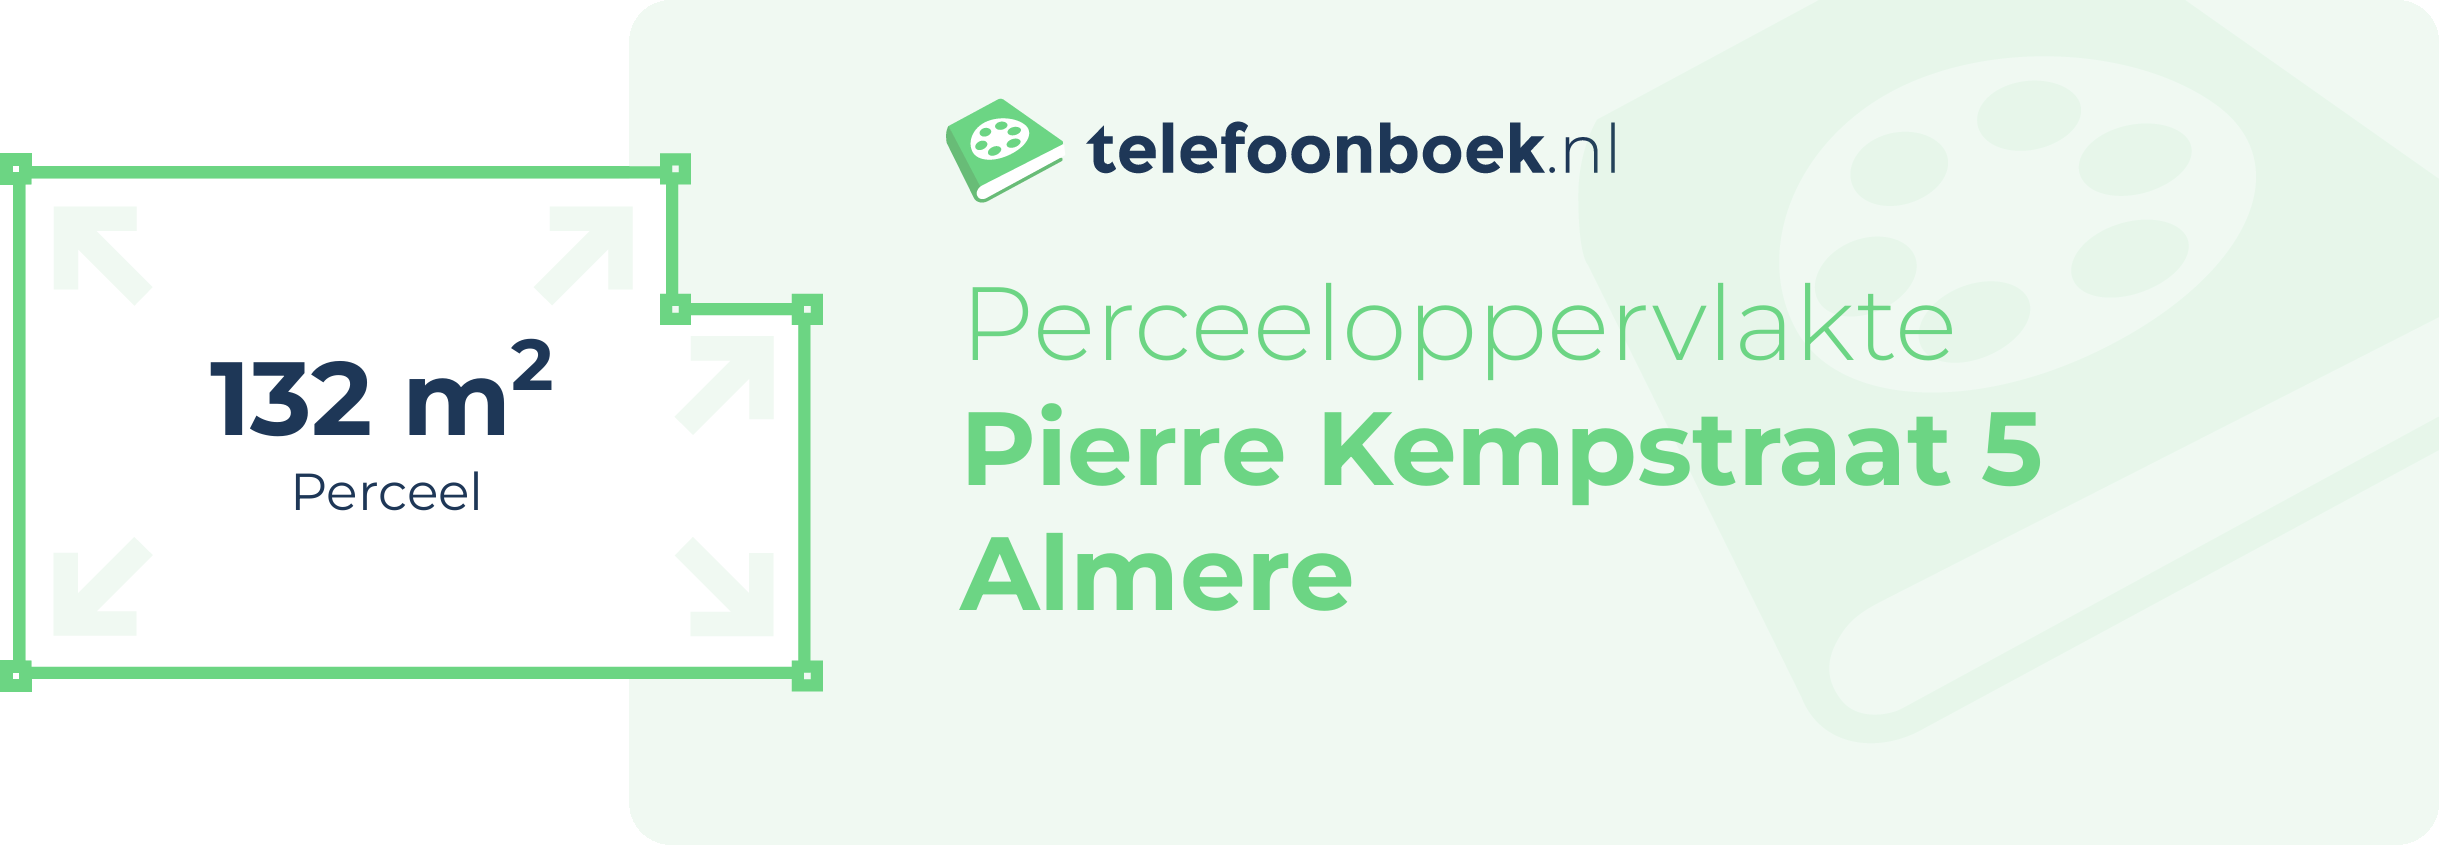 Perceeloppervlakte Pierre Kempstraat 5 Almere